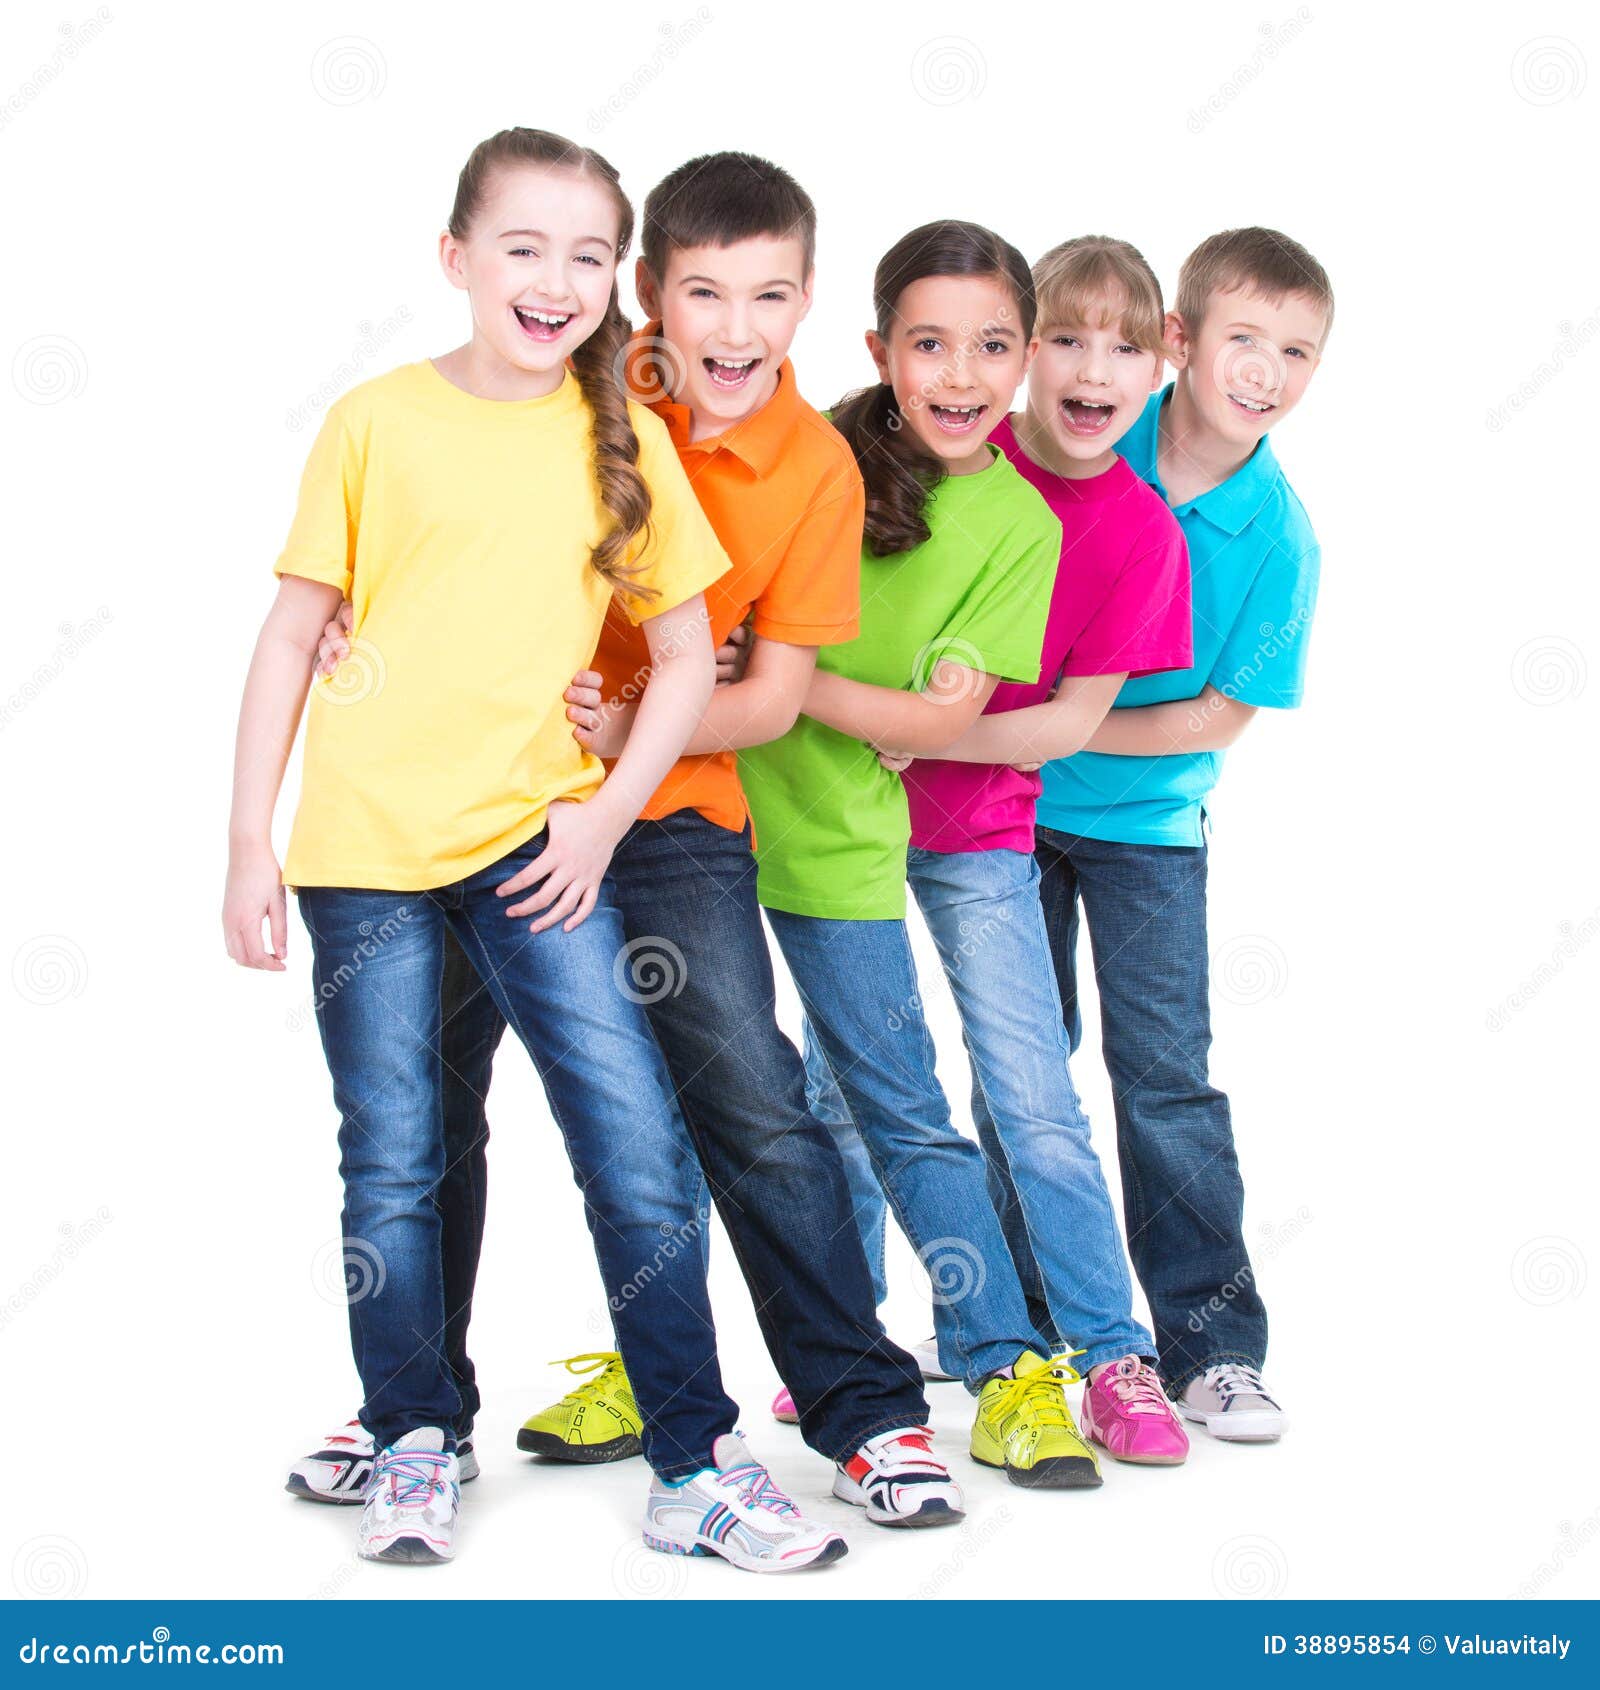 Gruppo di supporto dei bambini dietro a vicenda. Il gruppo di bambini felici in magliette variopinte sta dietro a vicenda su fondo bianco.